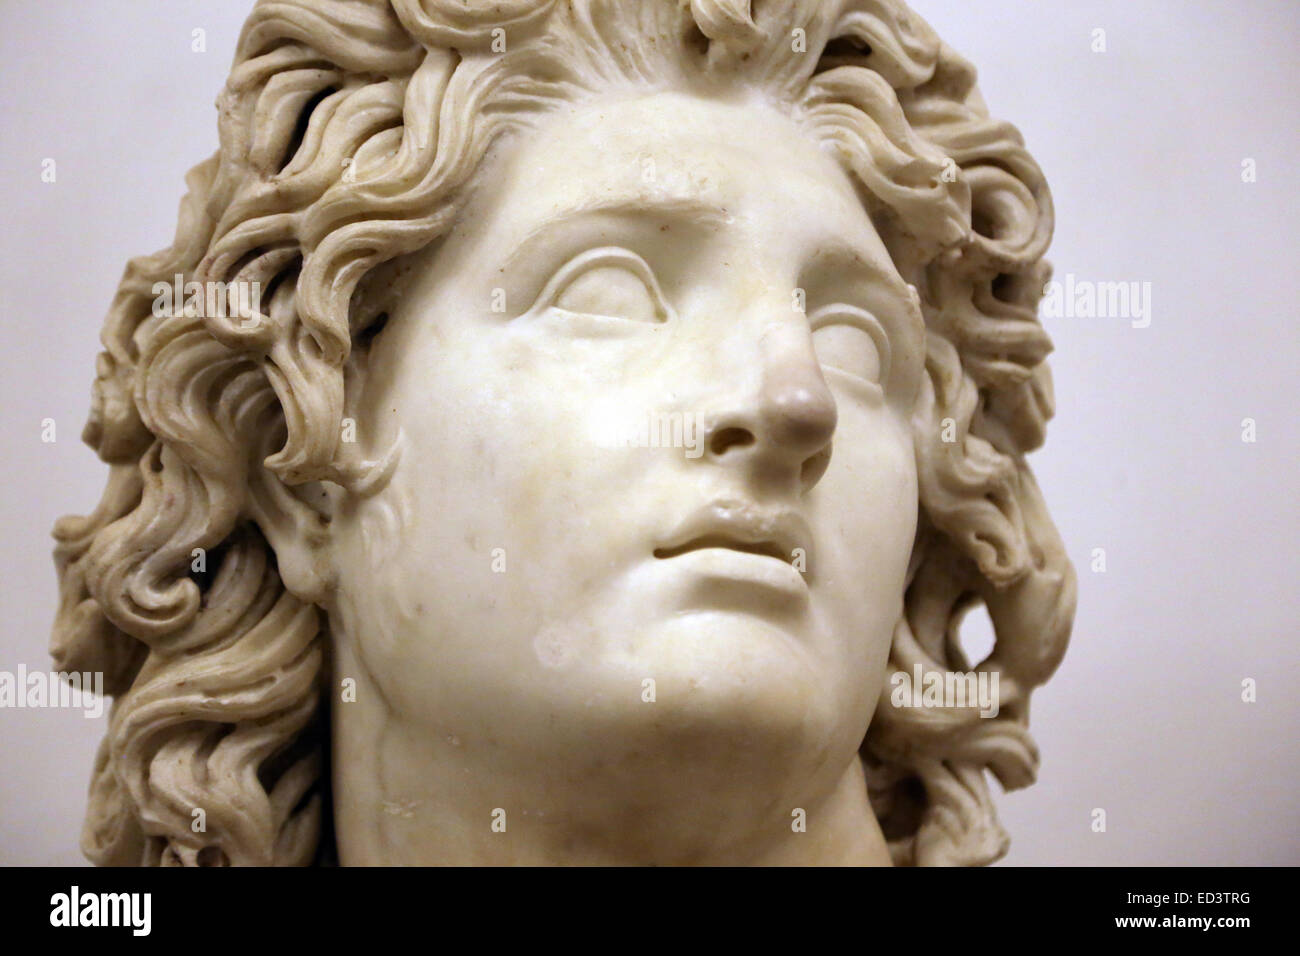 Alejandro III el Magno (-356-323). Rey de Macedonia (-336 a -323). Busto de Alexander-Helios. 3ª-2ª BC. Los Museos Capitolinos. Foto de stock